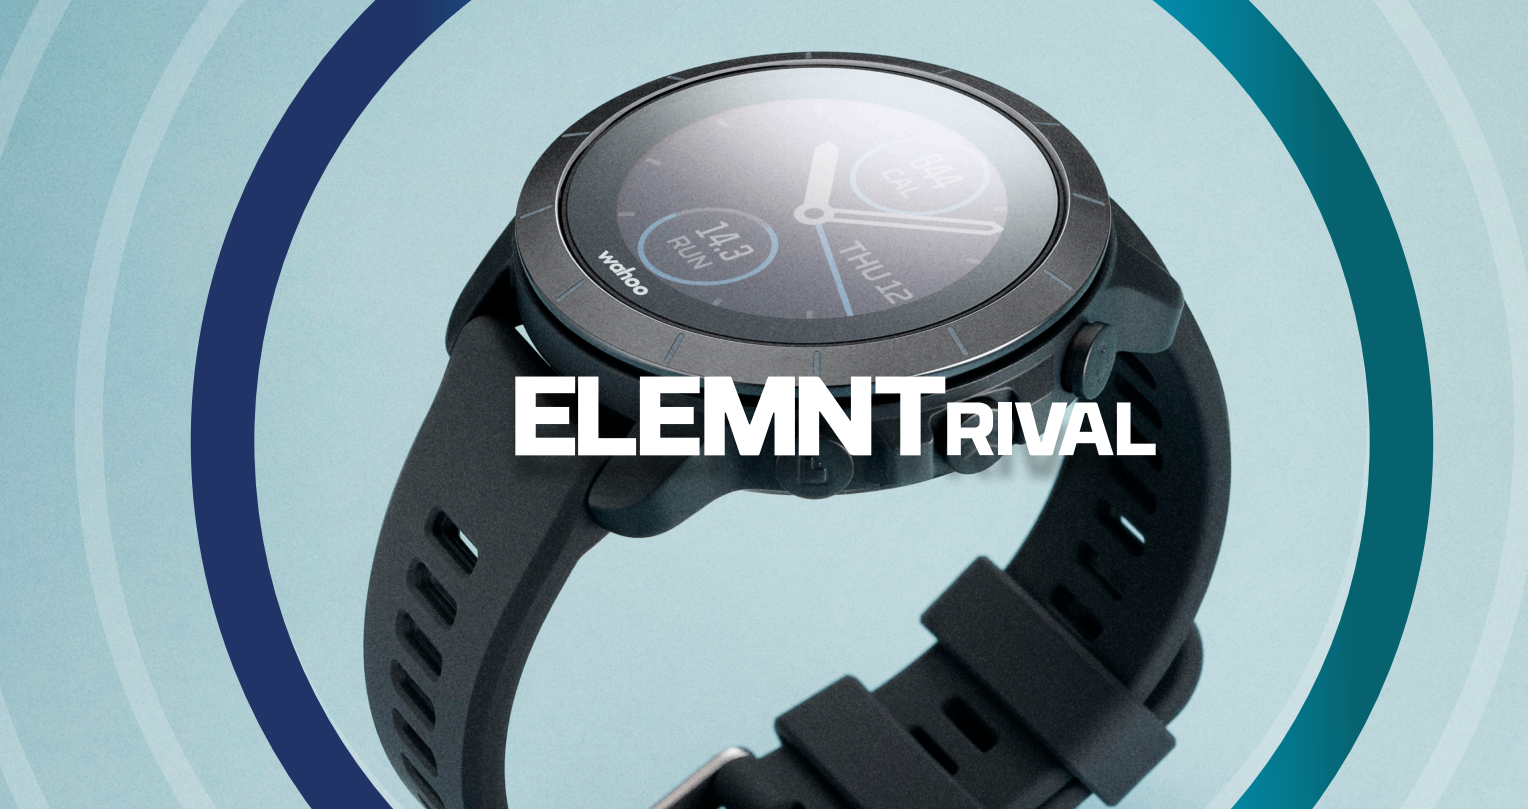 Wahoo首款運動手錶 ELEMNT RIVAL 將一貫簡單再強效的作風帶入跑步和三項鐵人